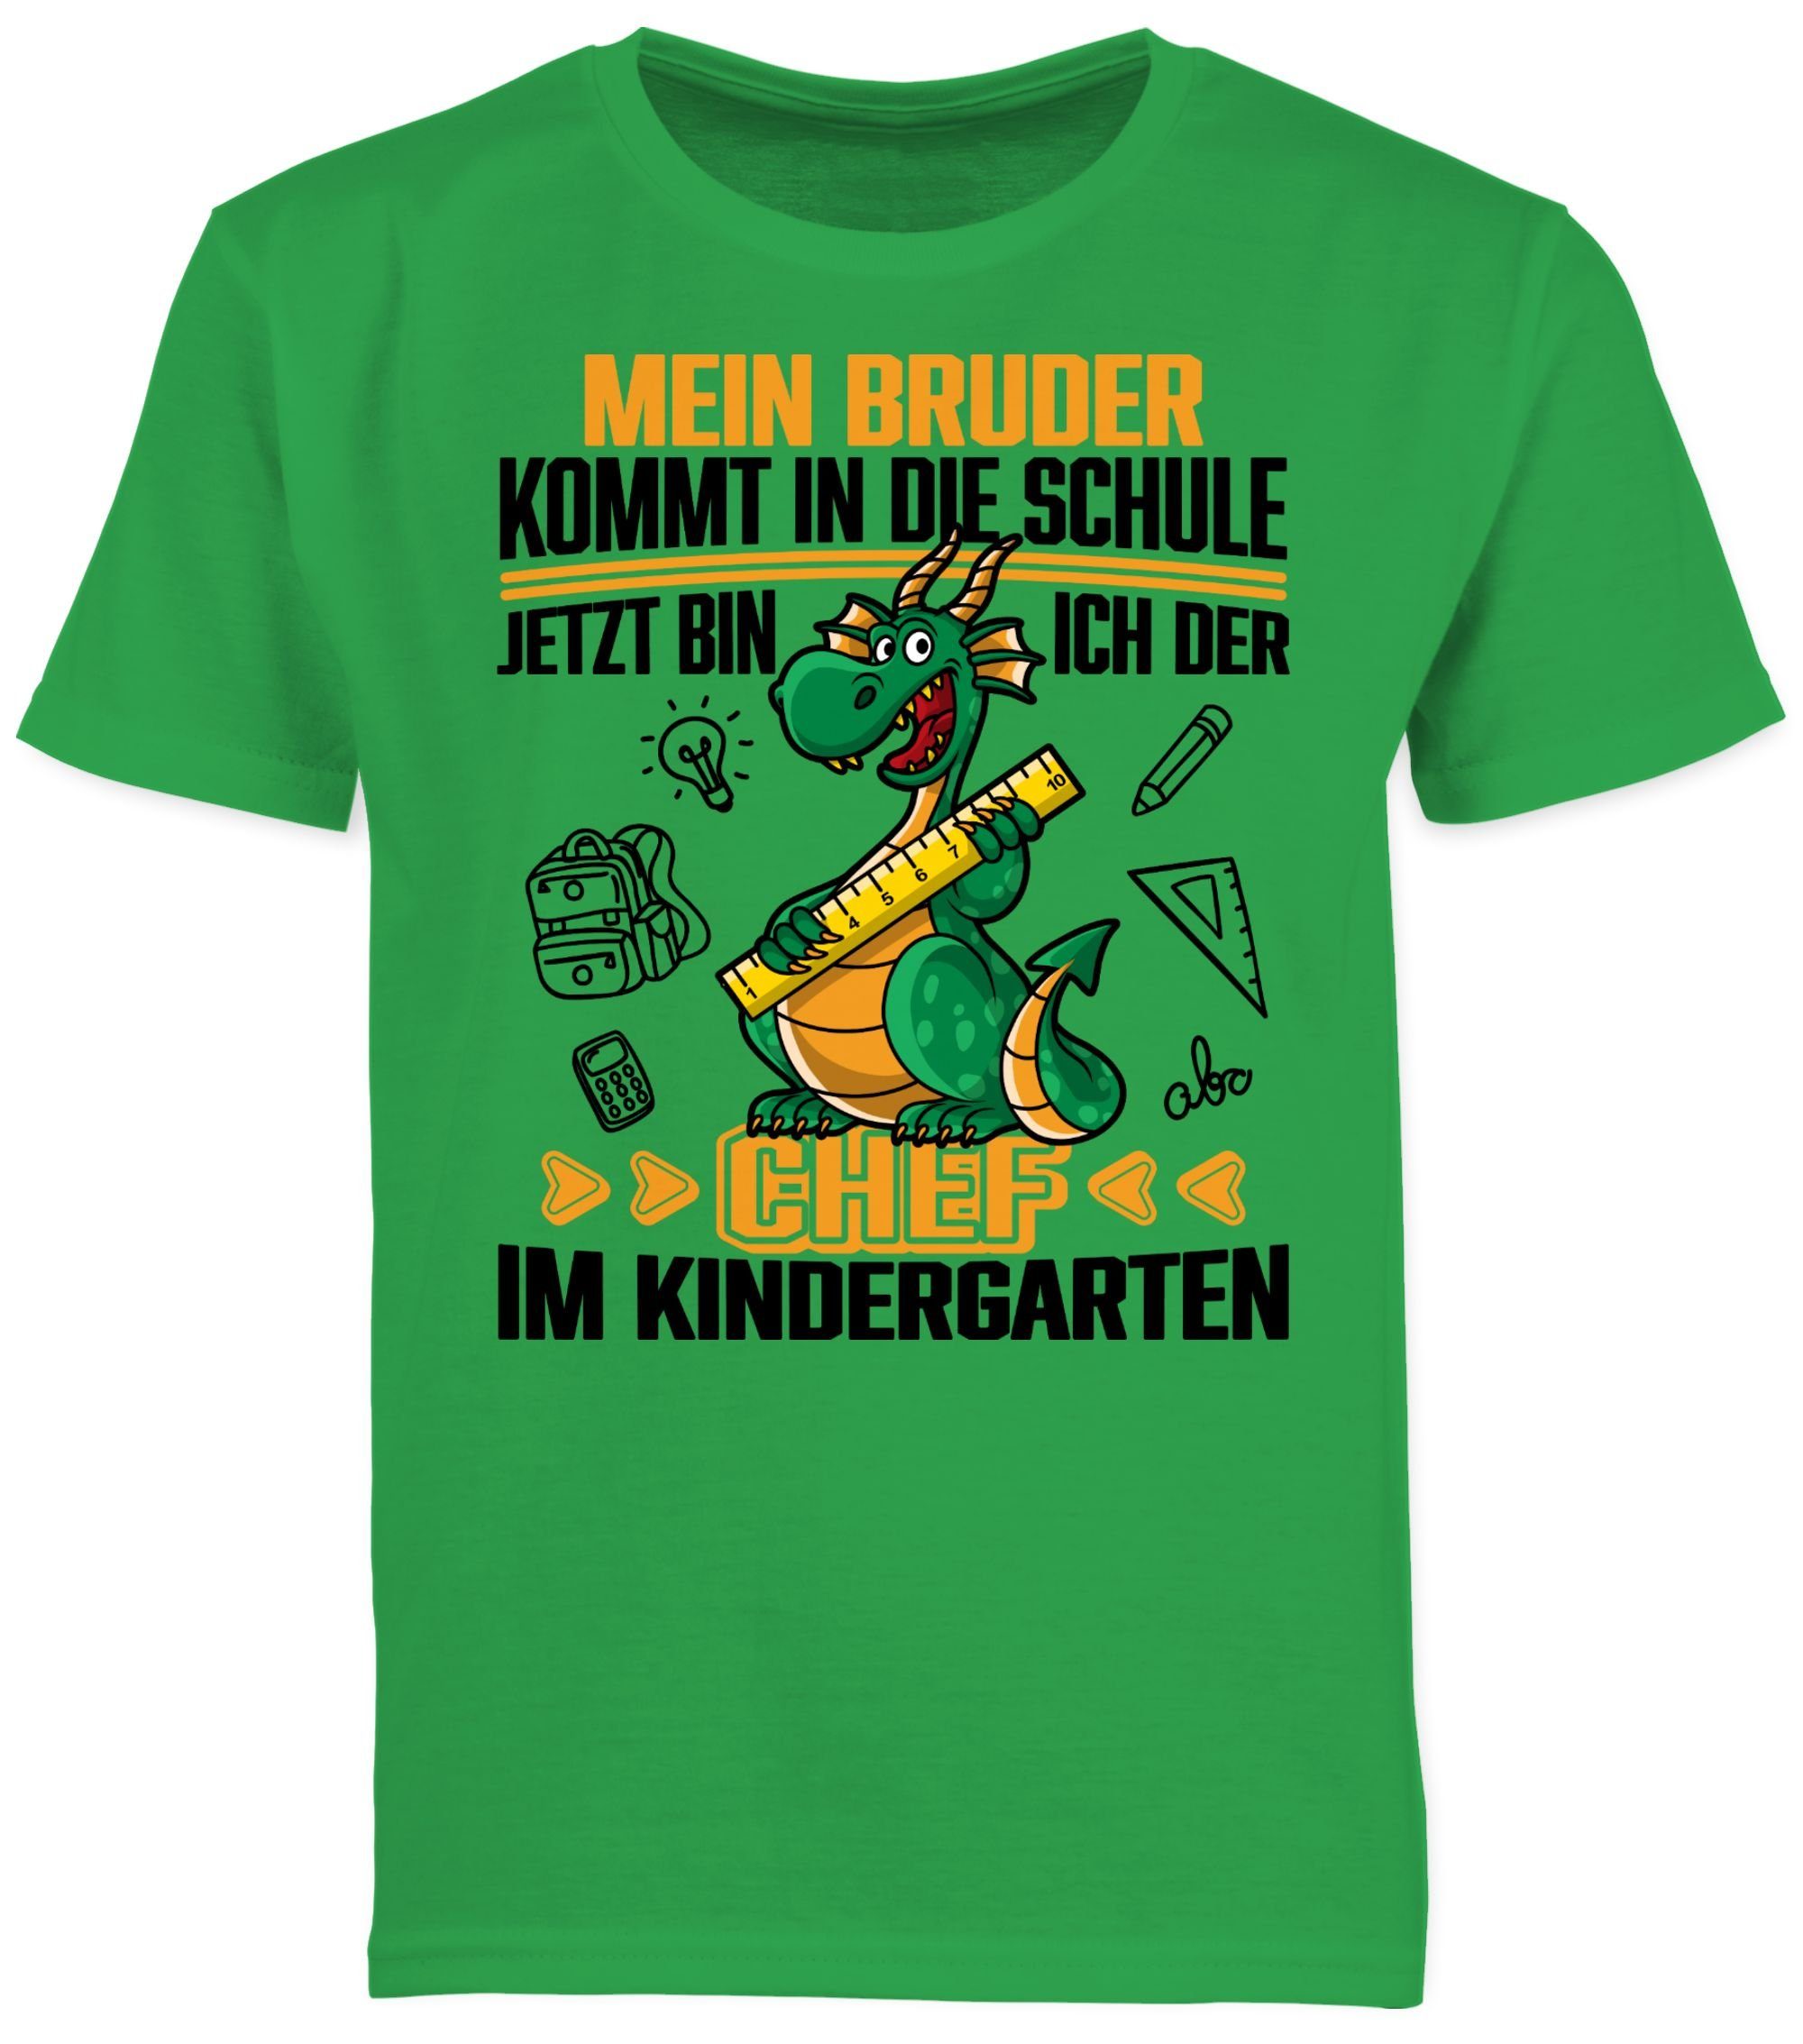 Schule! Chef Kindergarten Bruder 1 ich bin die der Shirtracer im kommt Grün Kindergarte Hallo in Jetzt Mein T-Shirt